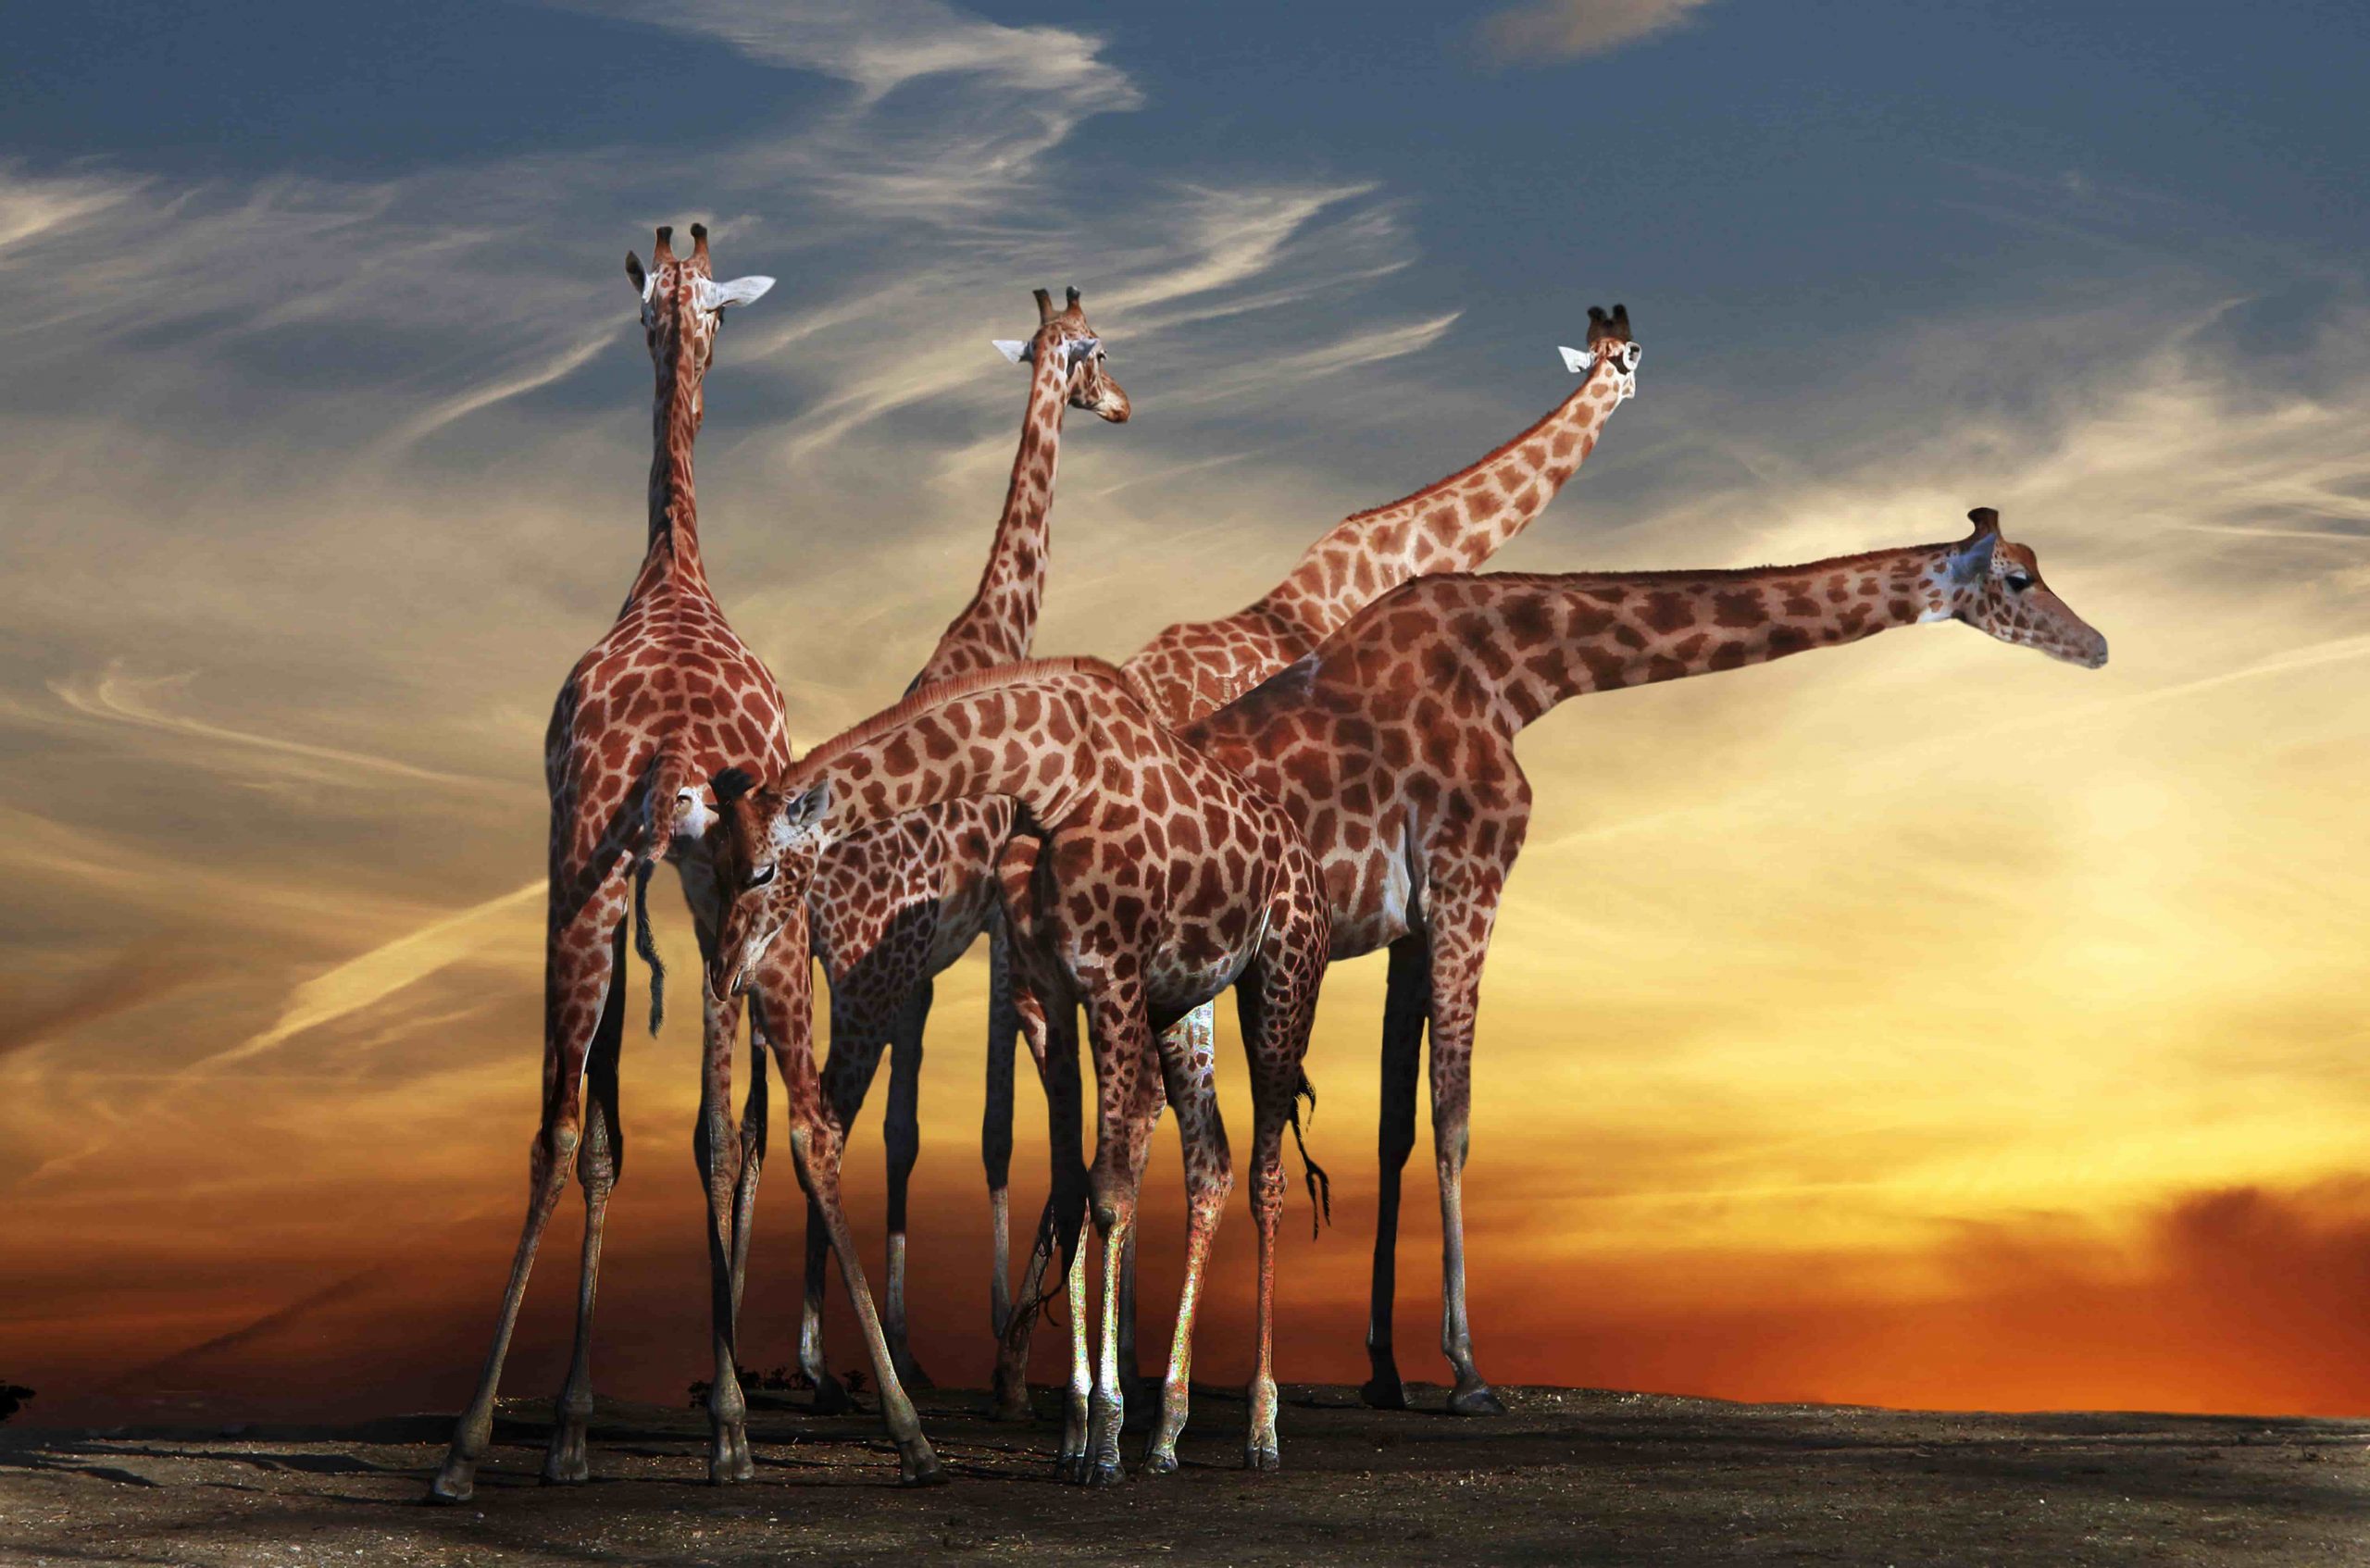 See giraffes on safari in Africa